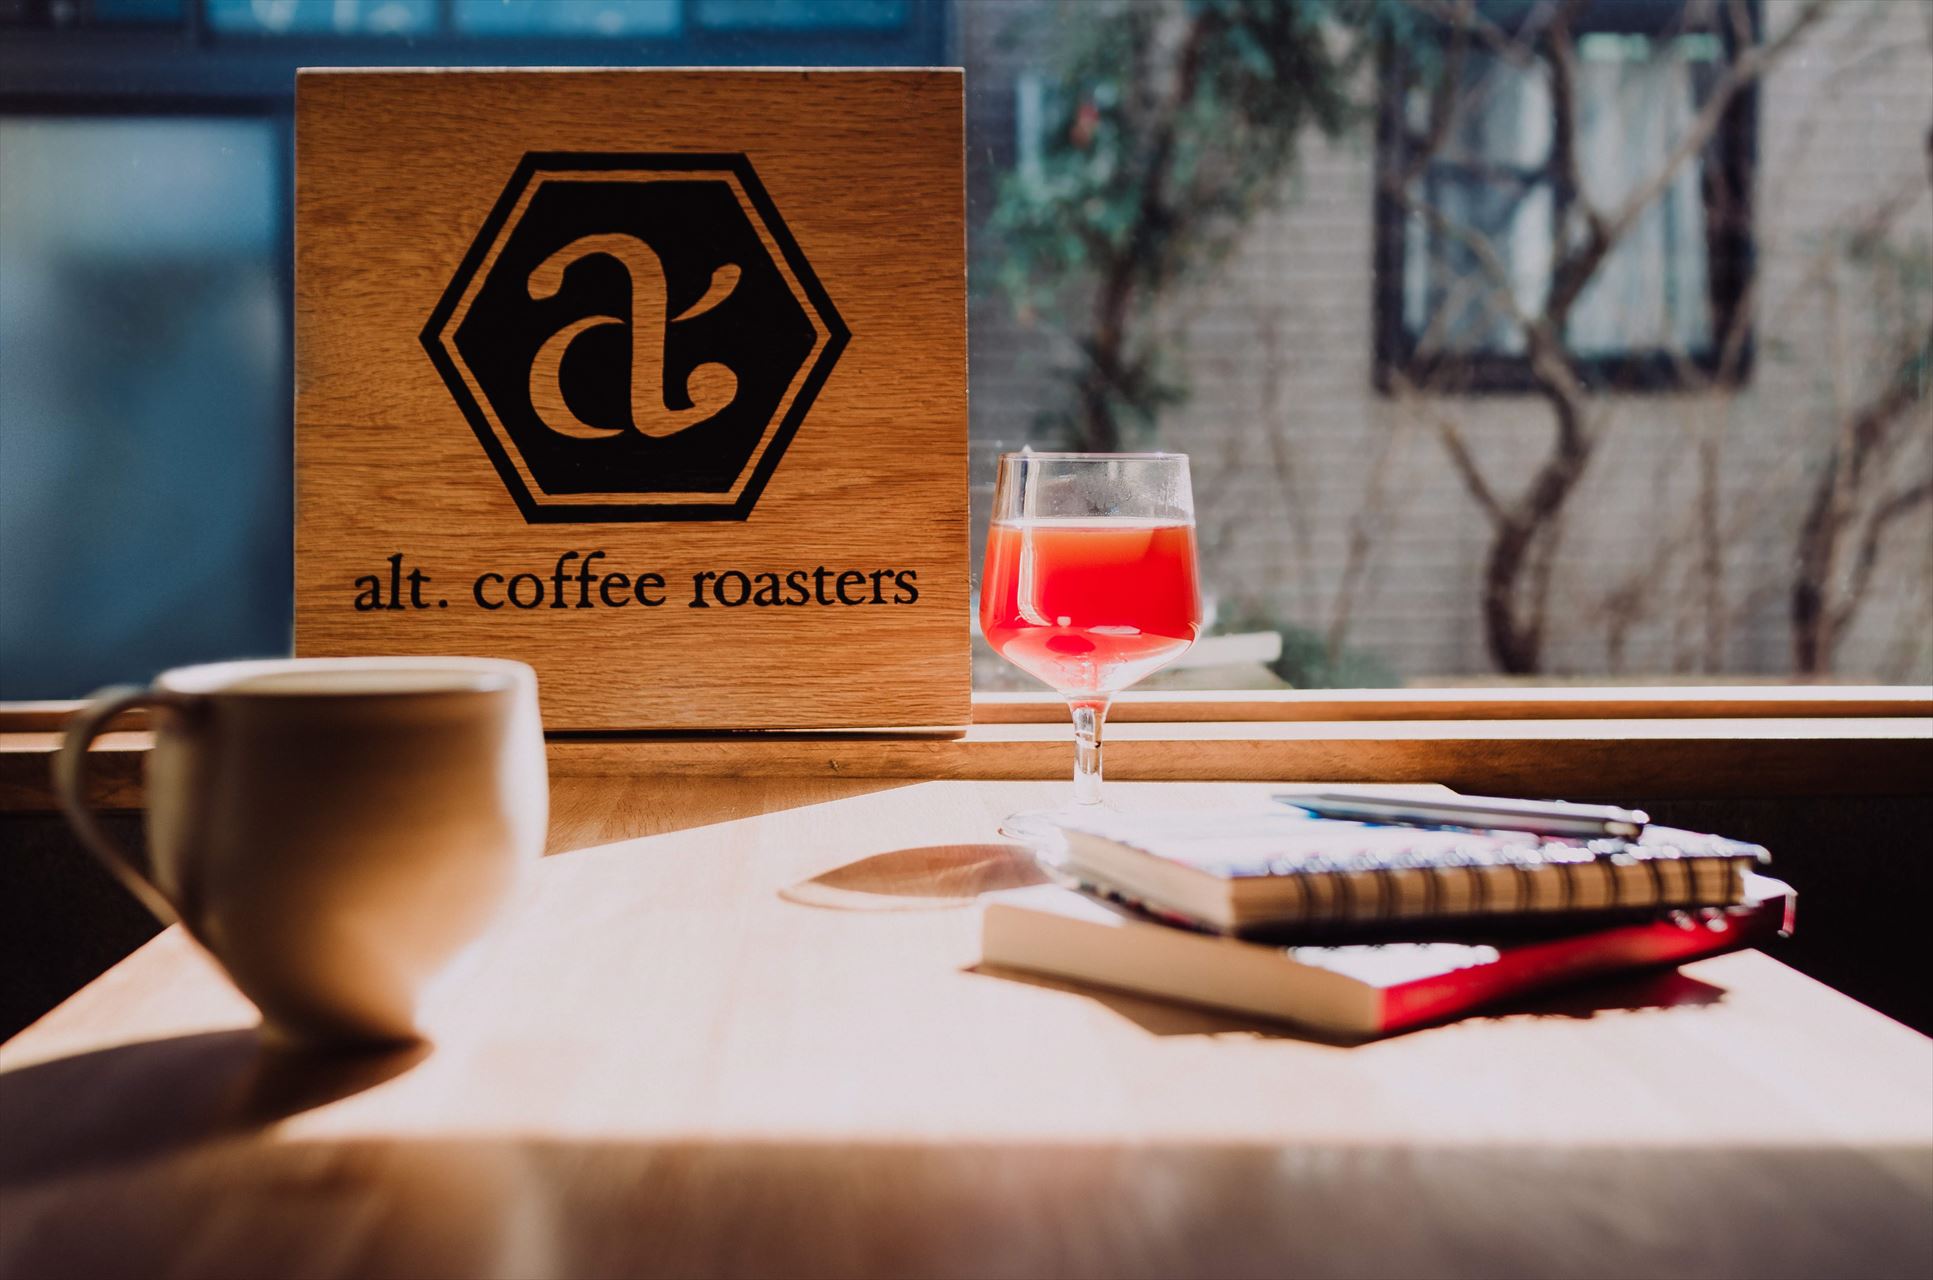 alt.coffee roasters